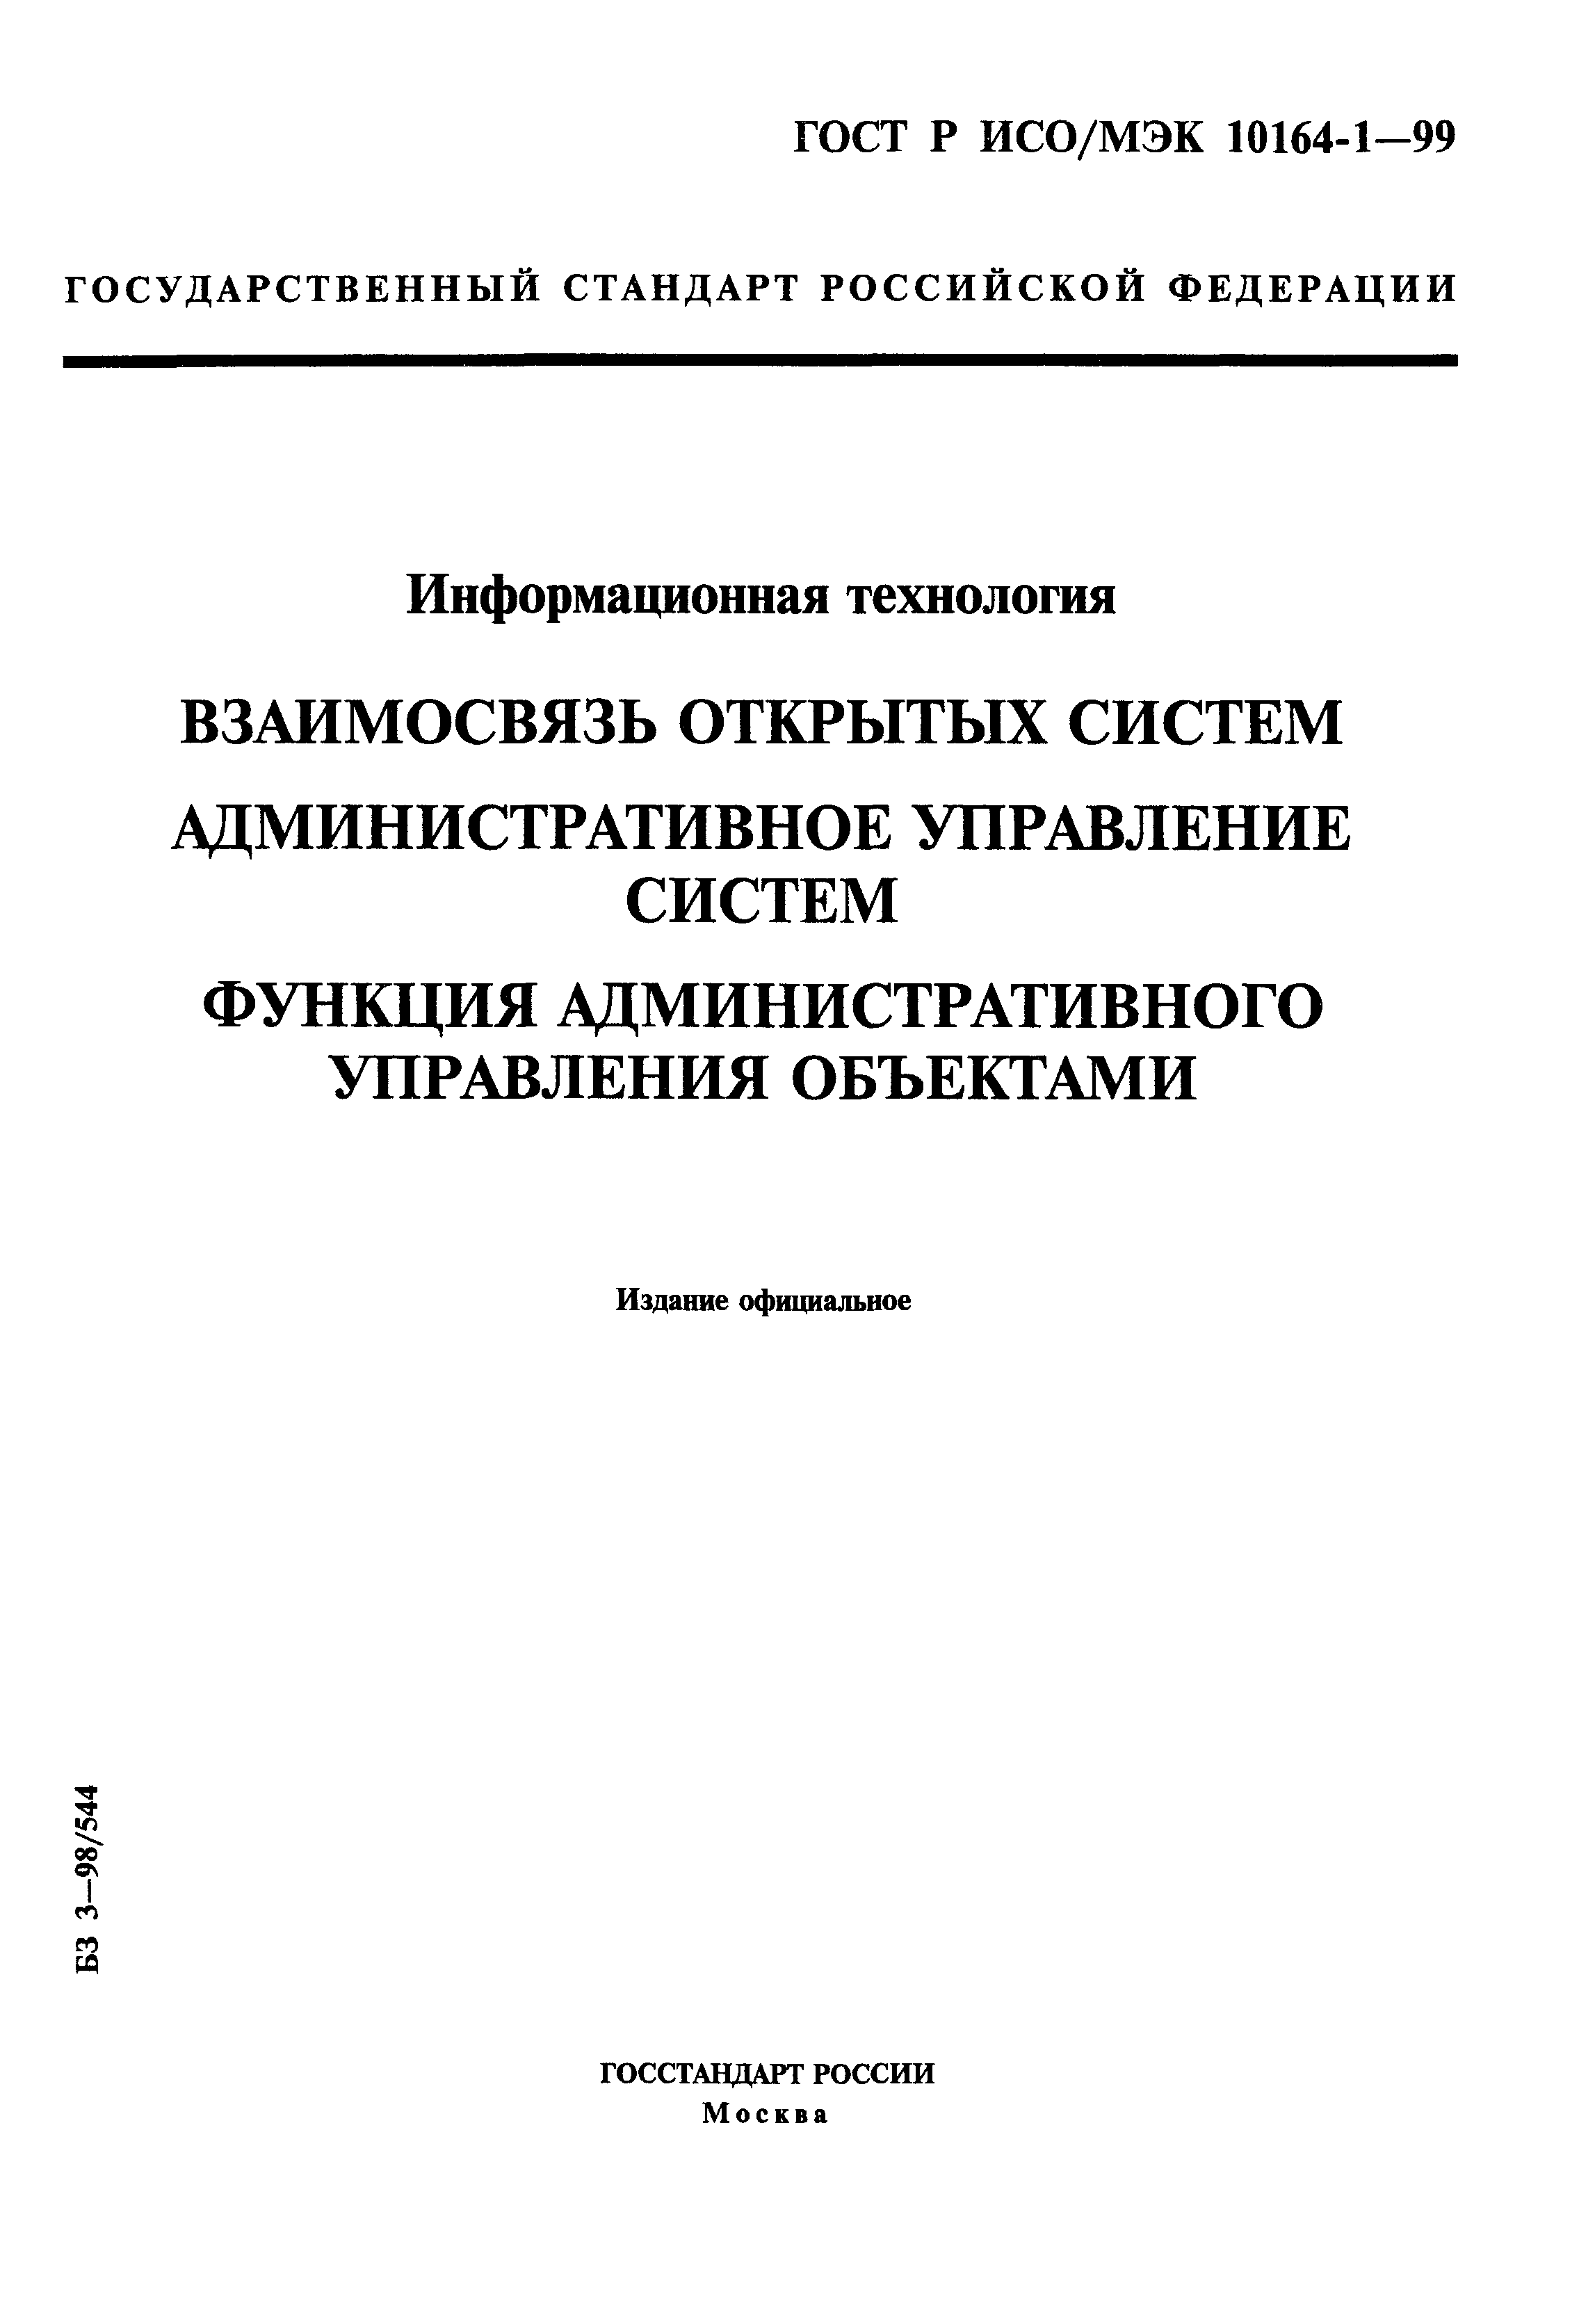 ГОСТ Р ИСО/МЭК 10164-1-99